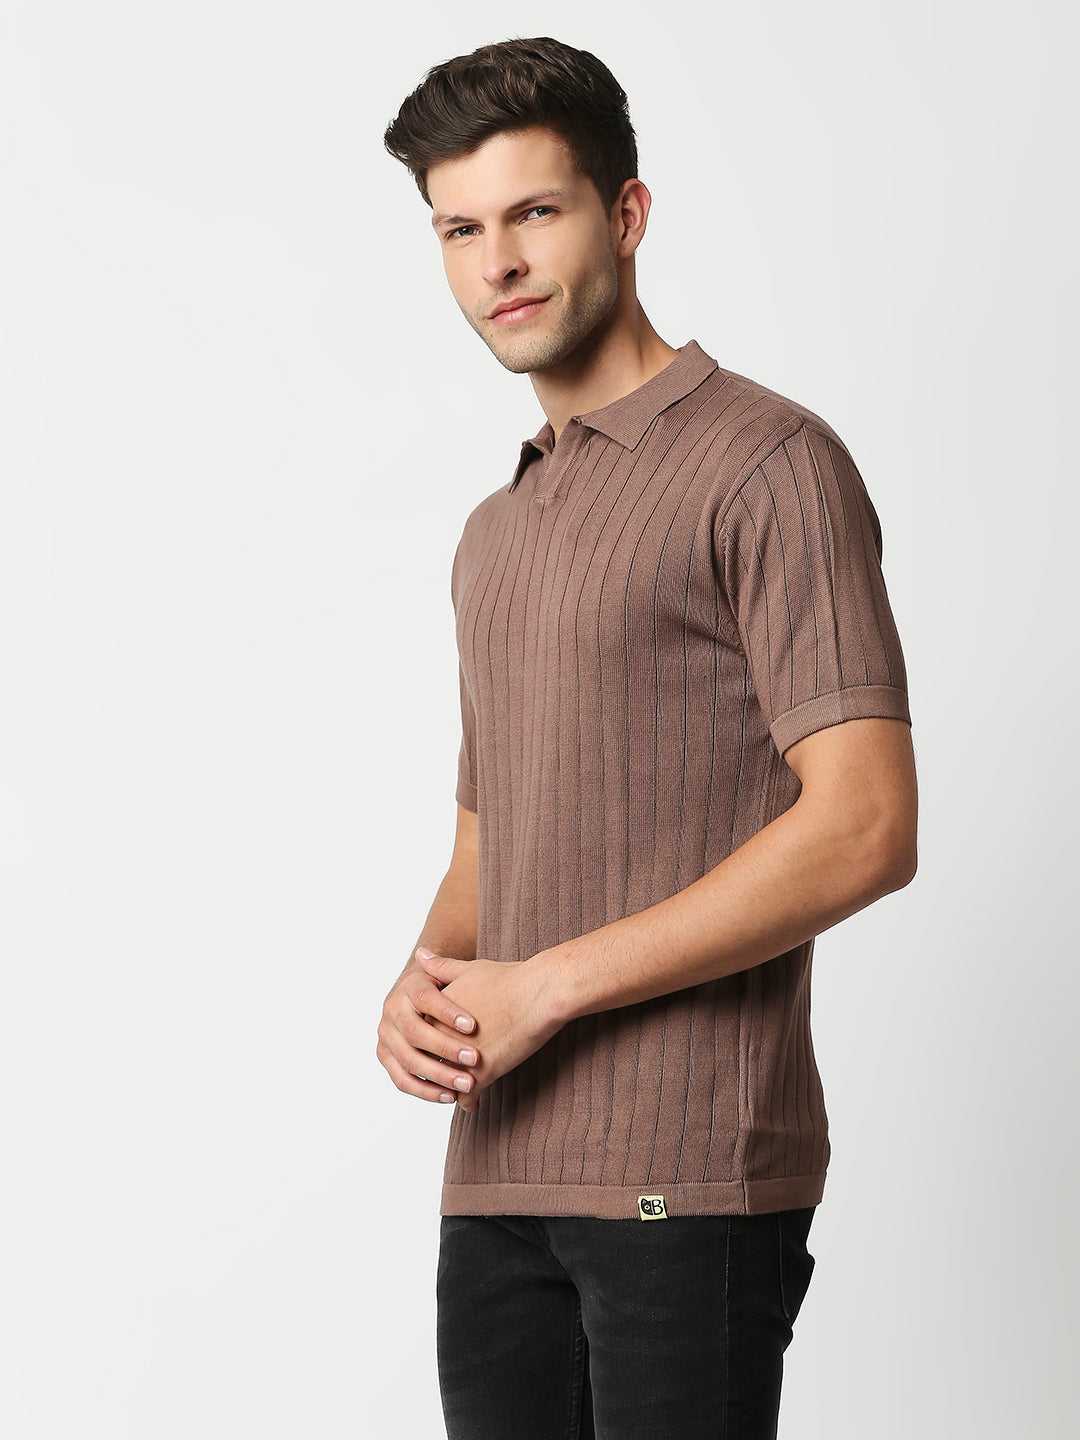 Buy Blamblack Men's collar Flat Knit Half Sleeves Brown Color T Shirt